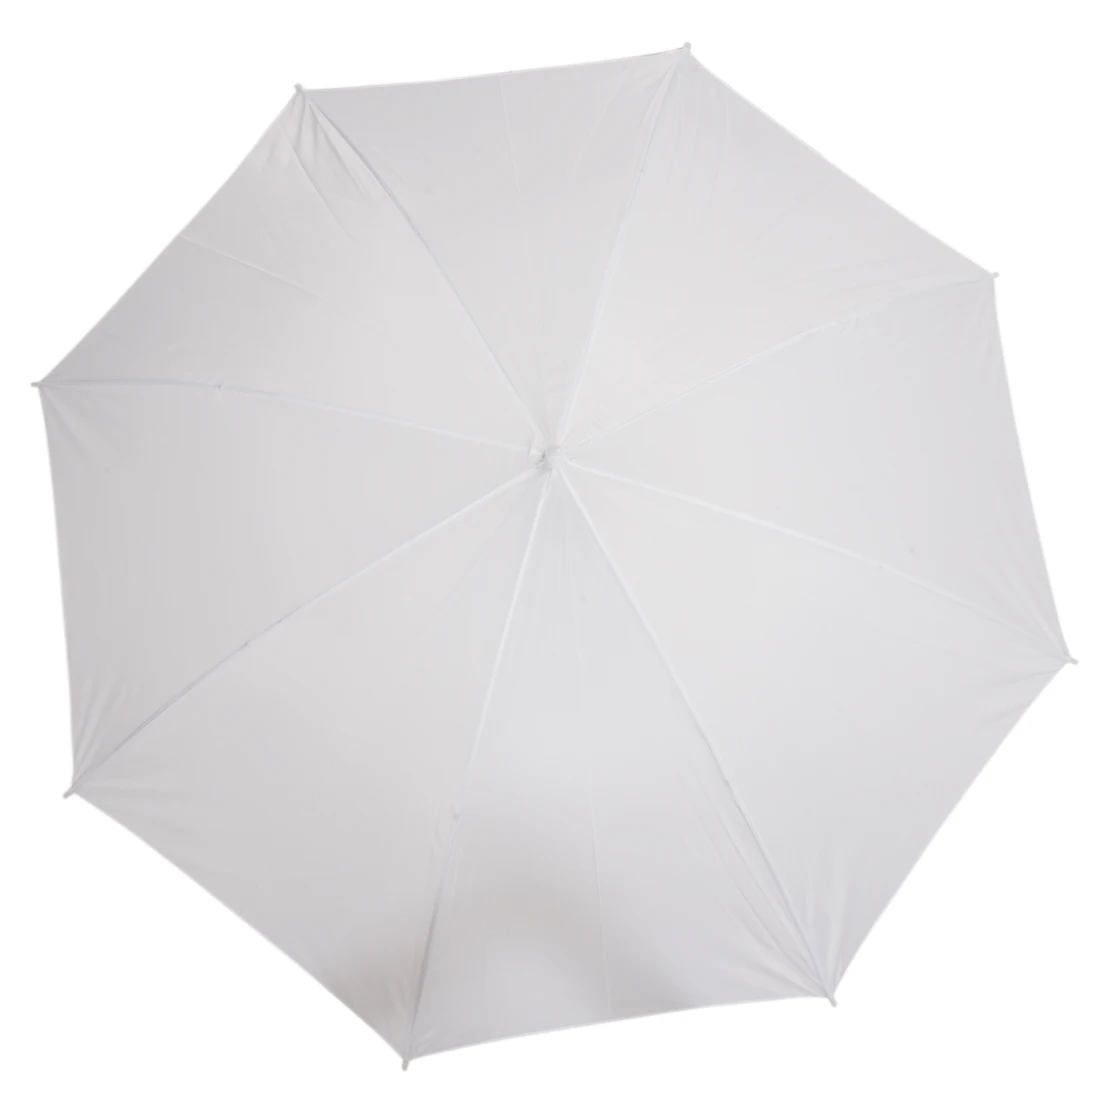 Лидирующий бренд 40 дюймов/103 см белая полупрозрачная вспышка для мягкого зонта или фотостудии